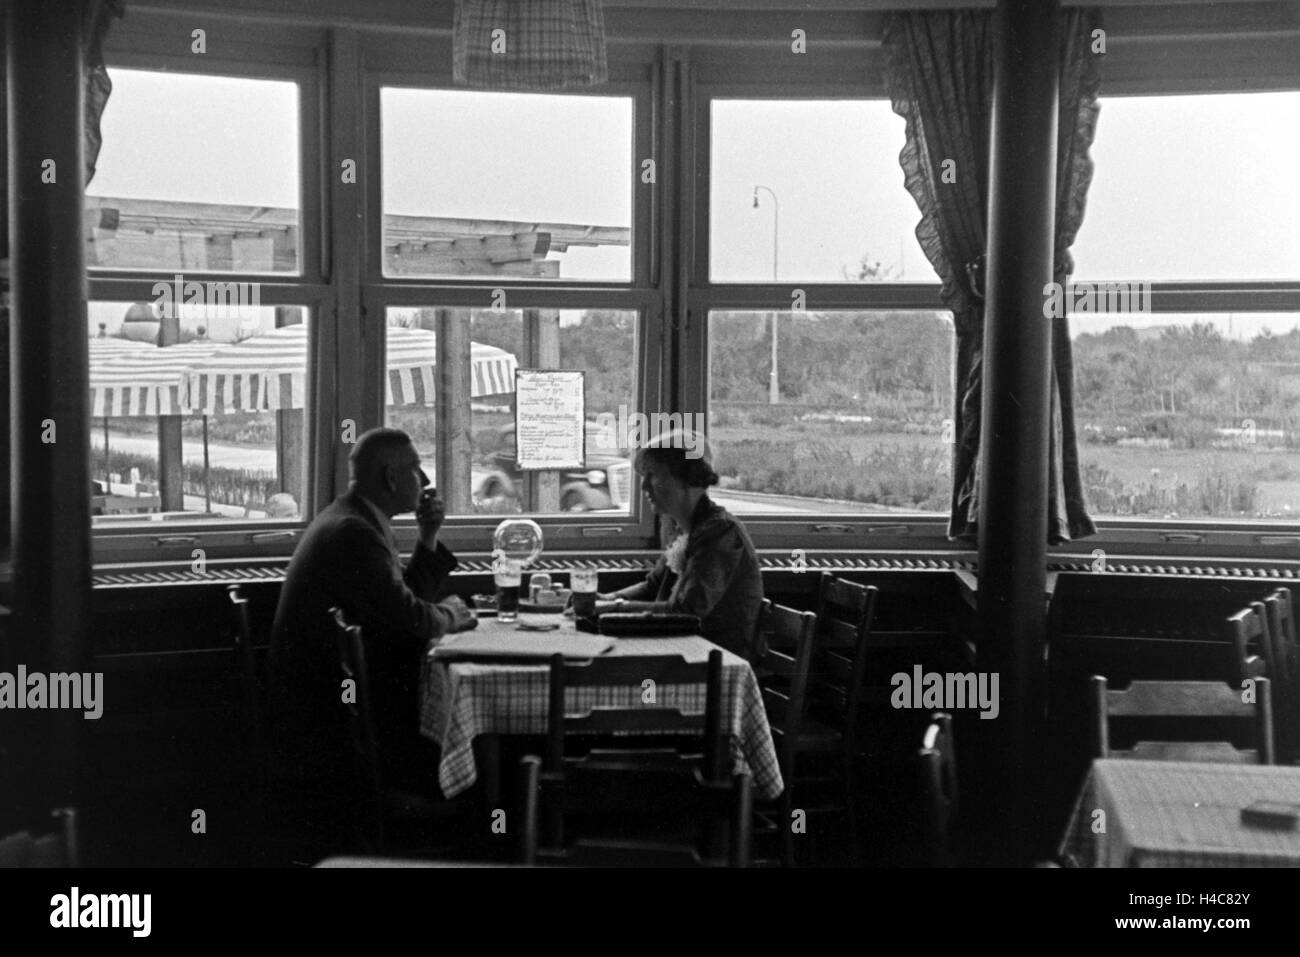 Ein Paar im Restaurant von Reichsautobahngaststätte, 1930er Jahre Deutschland. Un couple au restaurant d'un autoroute Reichsautobahn roadhouse, Allemagne 1930 Banque D'Images